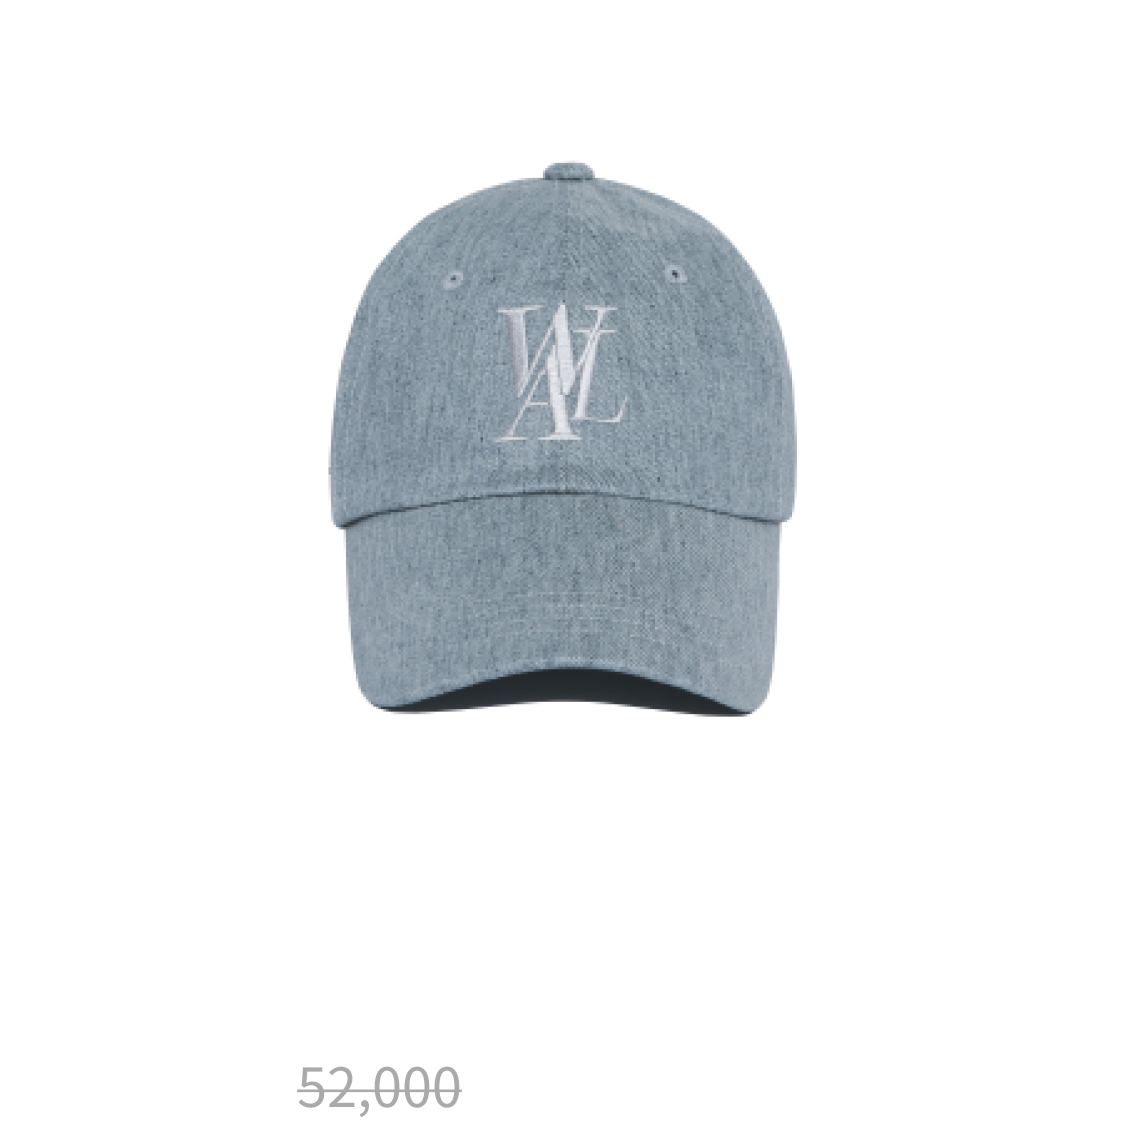 Signature coating denim ball cap - LIGHT INDIGO